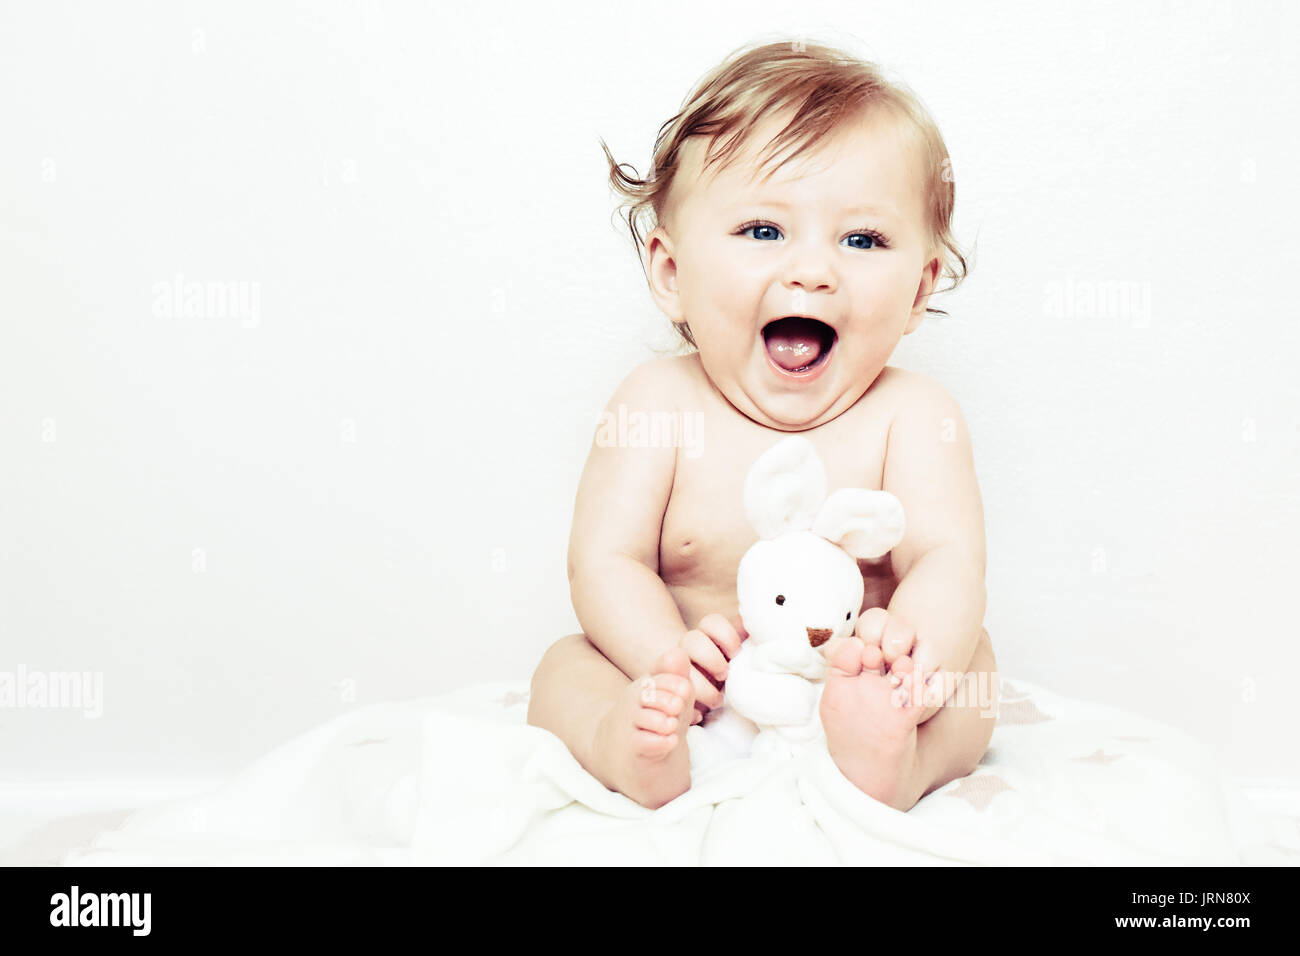 Un bébé heureux girl having fun rire et sourire Banque D'Images